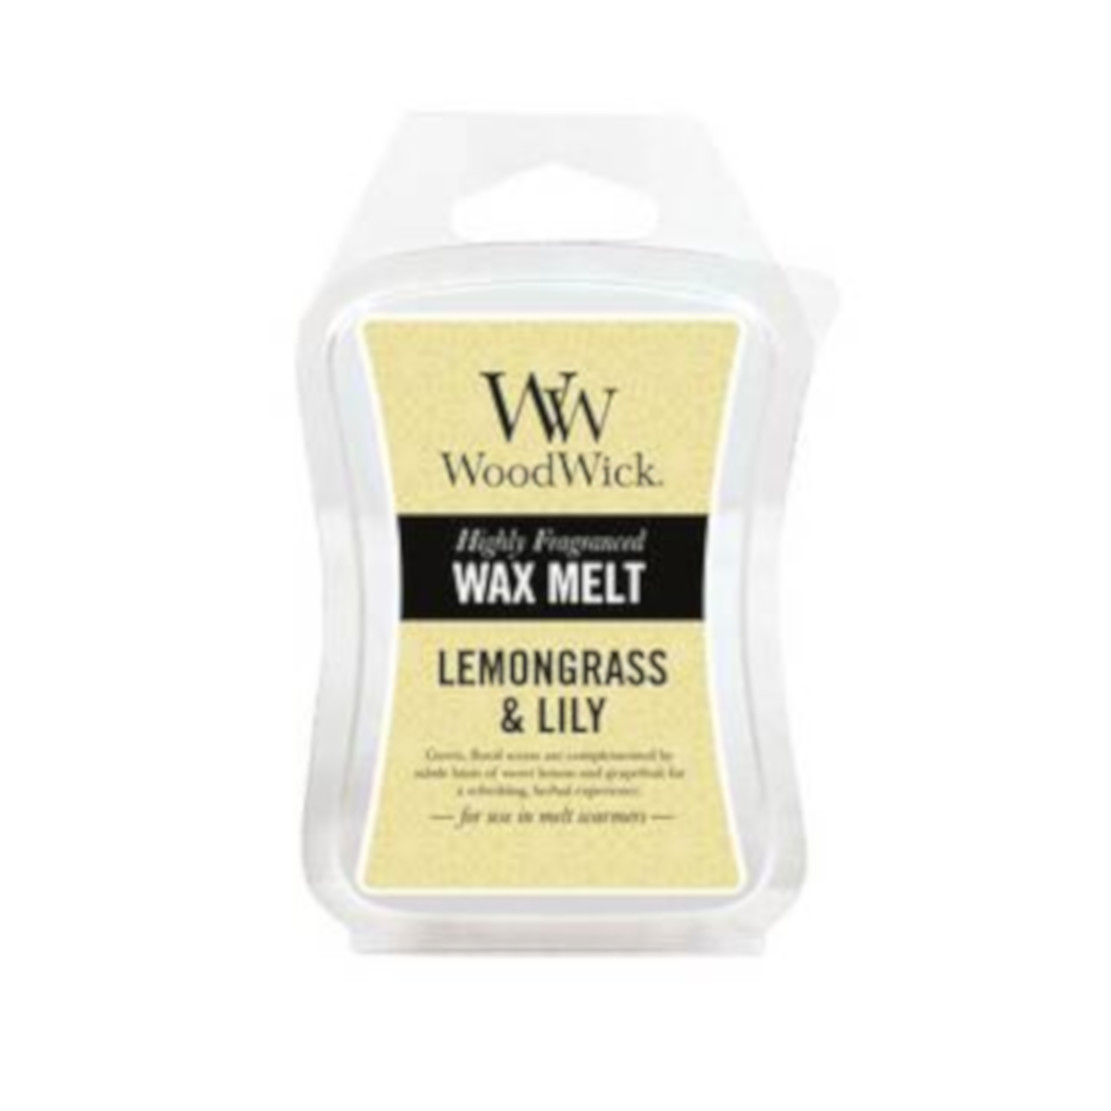 Woodwick Lemongrass and Lily Wax Melt